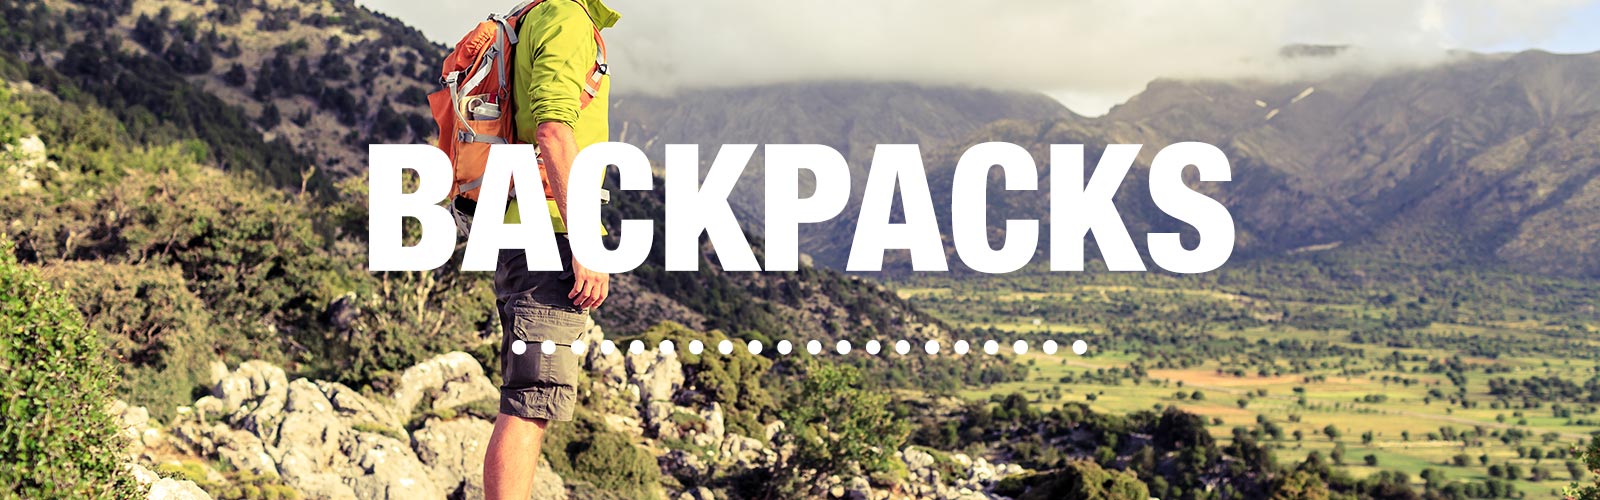 Go Ahead, Hike in a Sports Bra - Backpacker